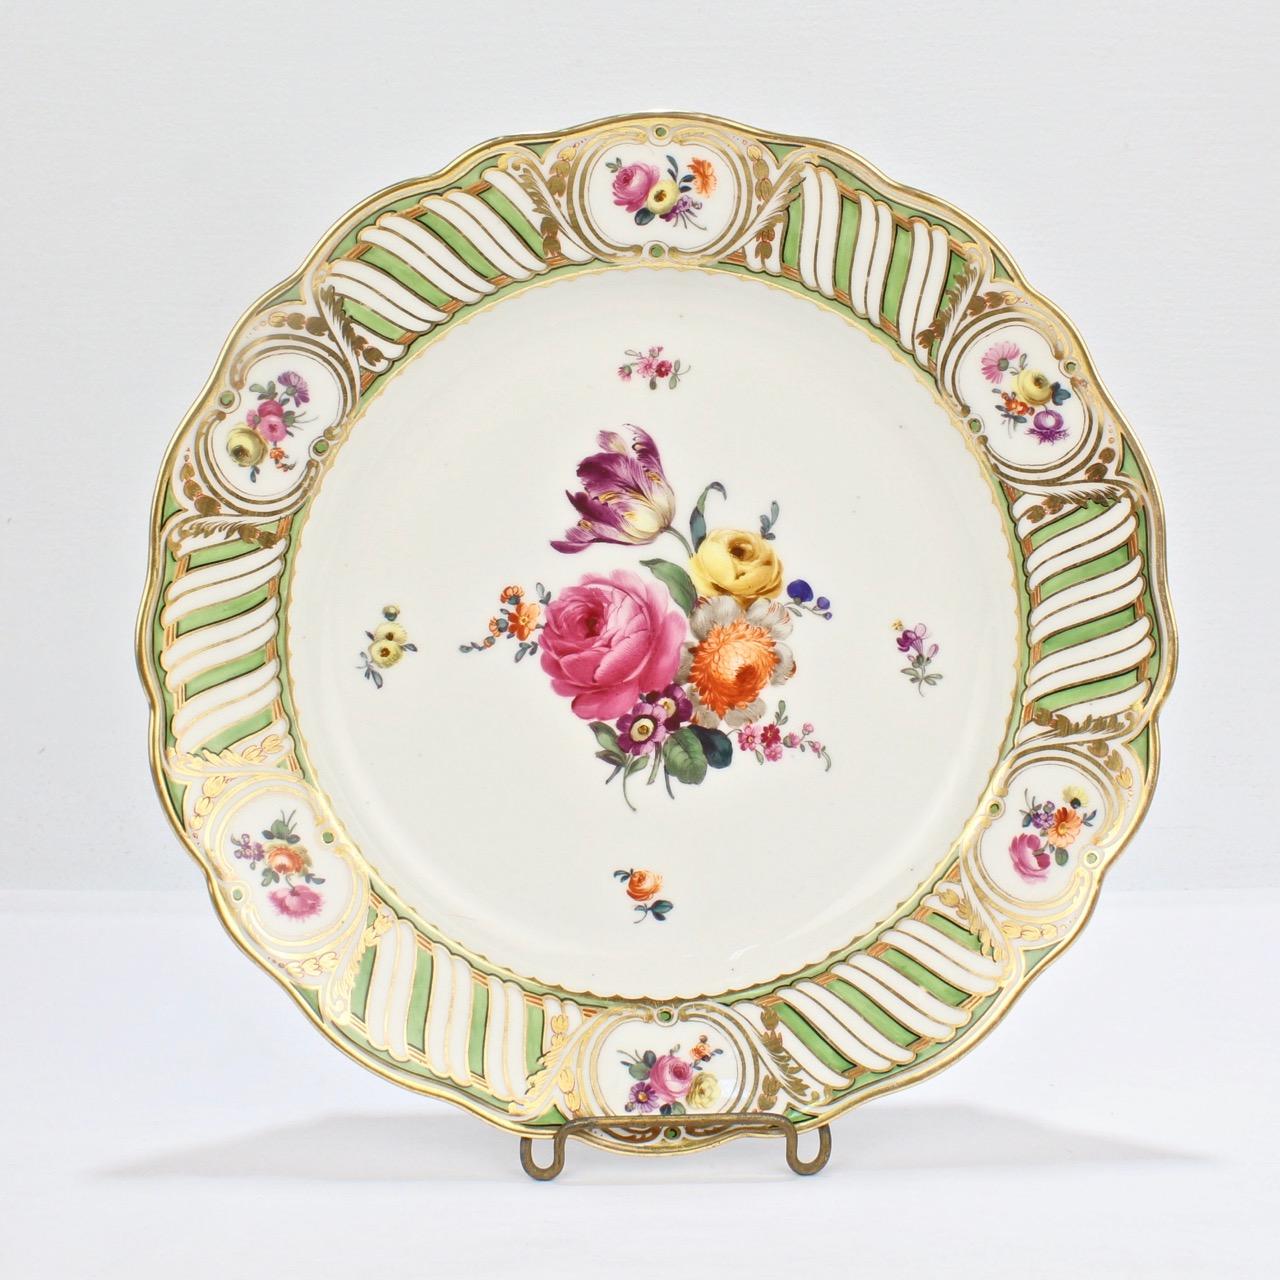 6 Antique Vienna Porcelain Plates with Green Borders & Deutsche Blumen Flowers 4